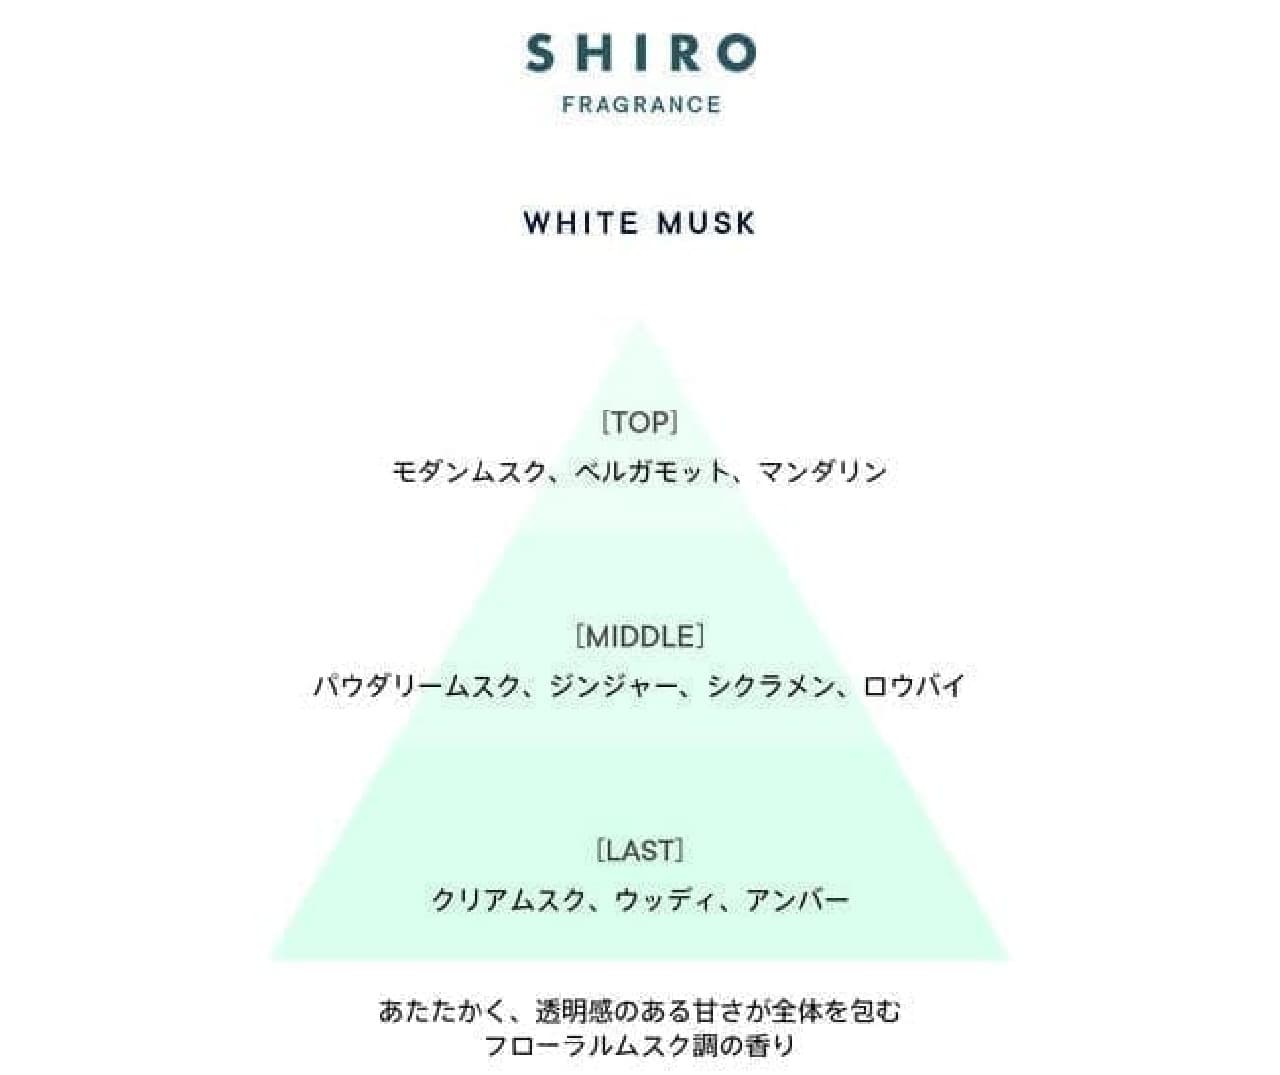 SHIRO 限定フレグランス「ホワイトムスク」